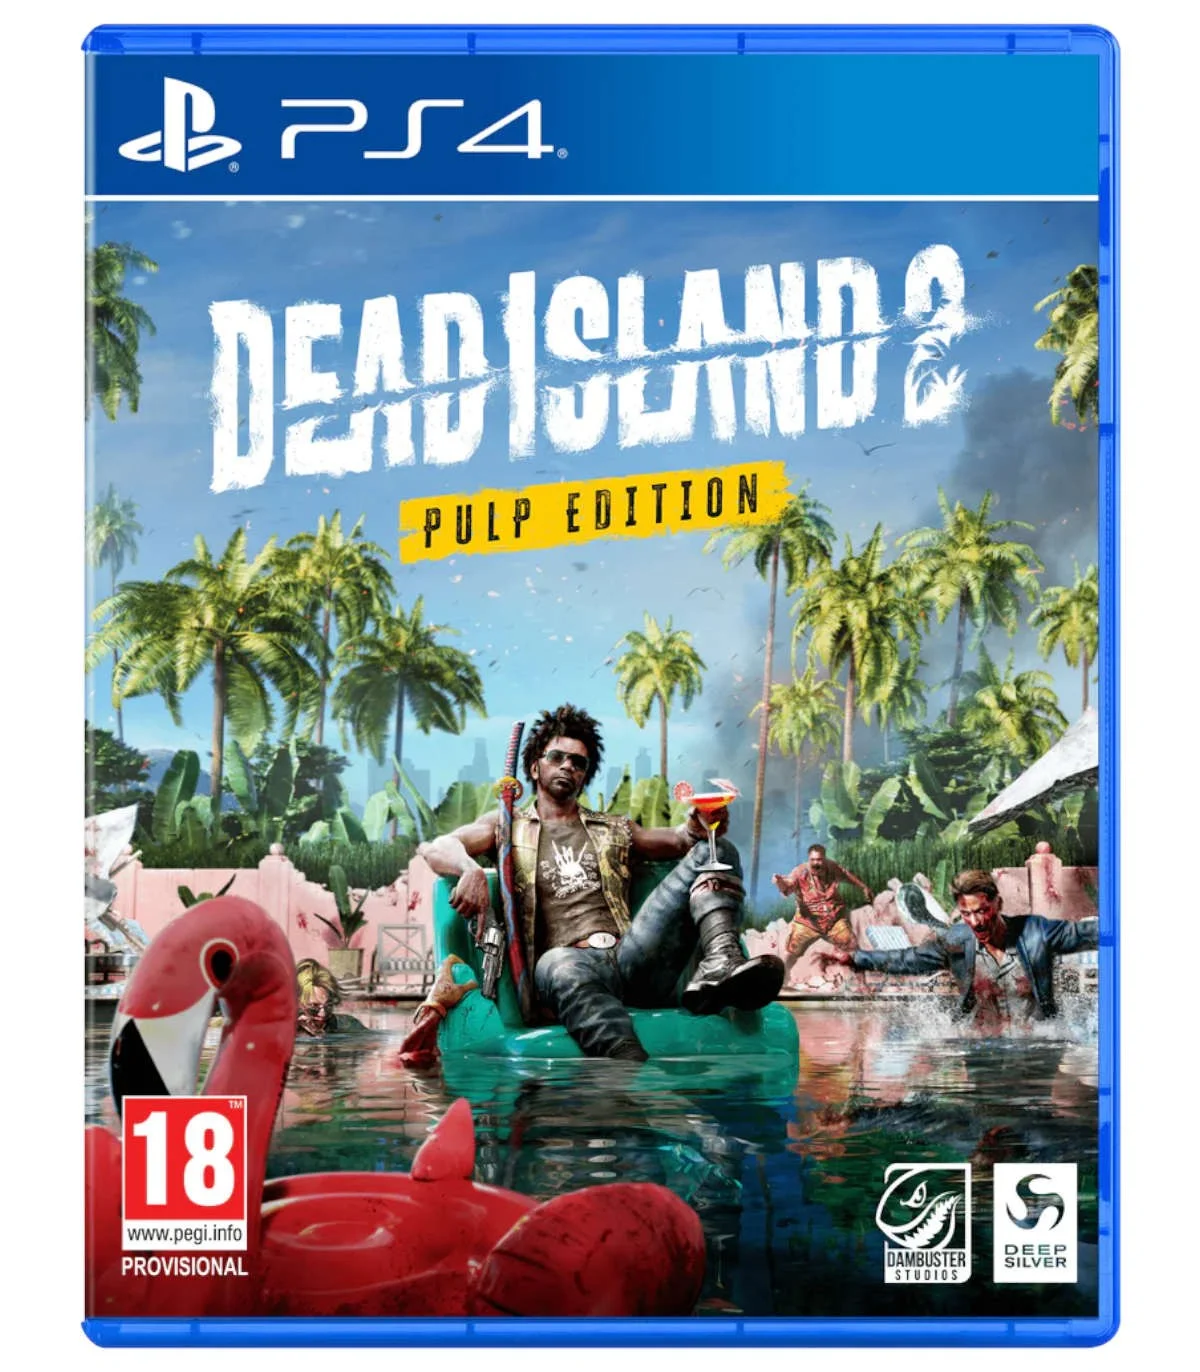 بازی Dead Island 2 Pulp Edition برای پلی استیشن 4